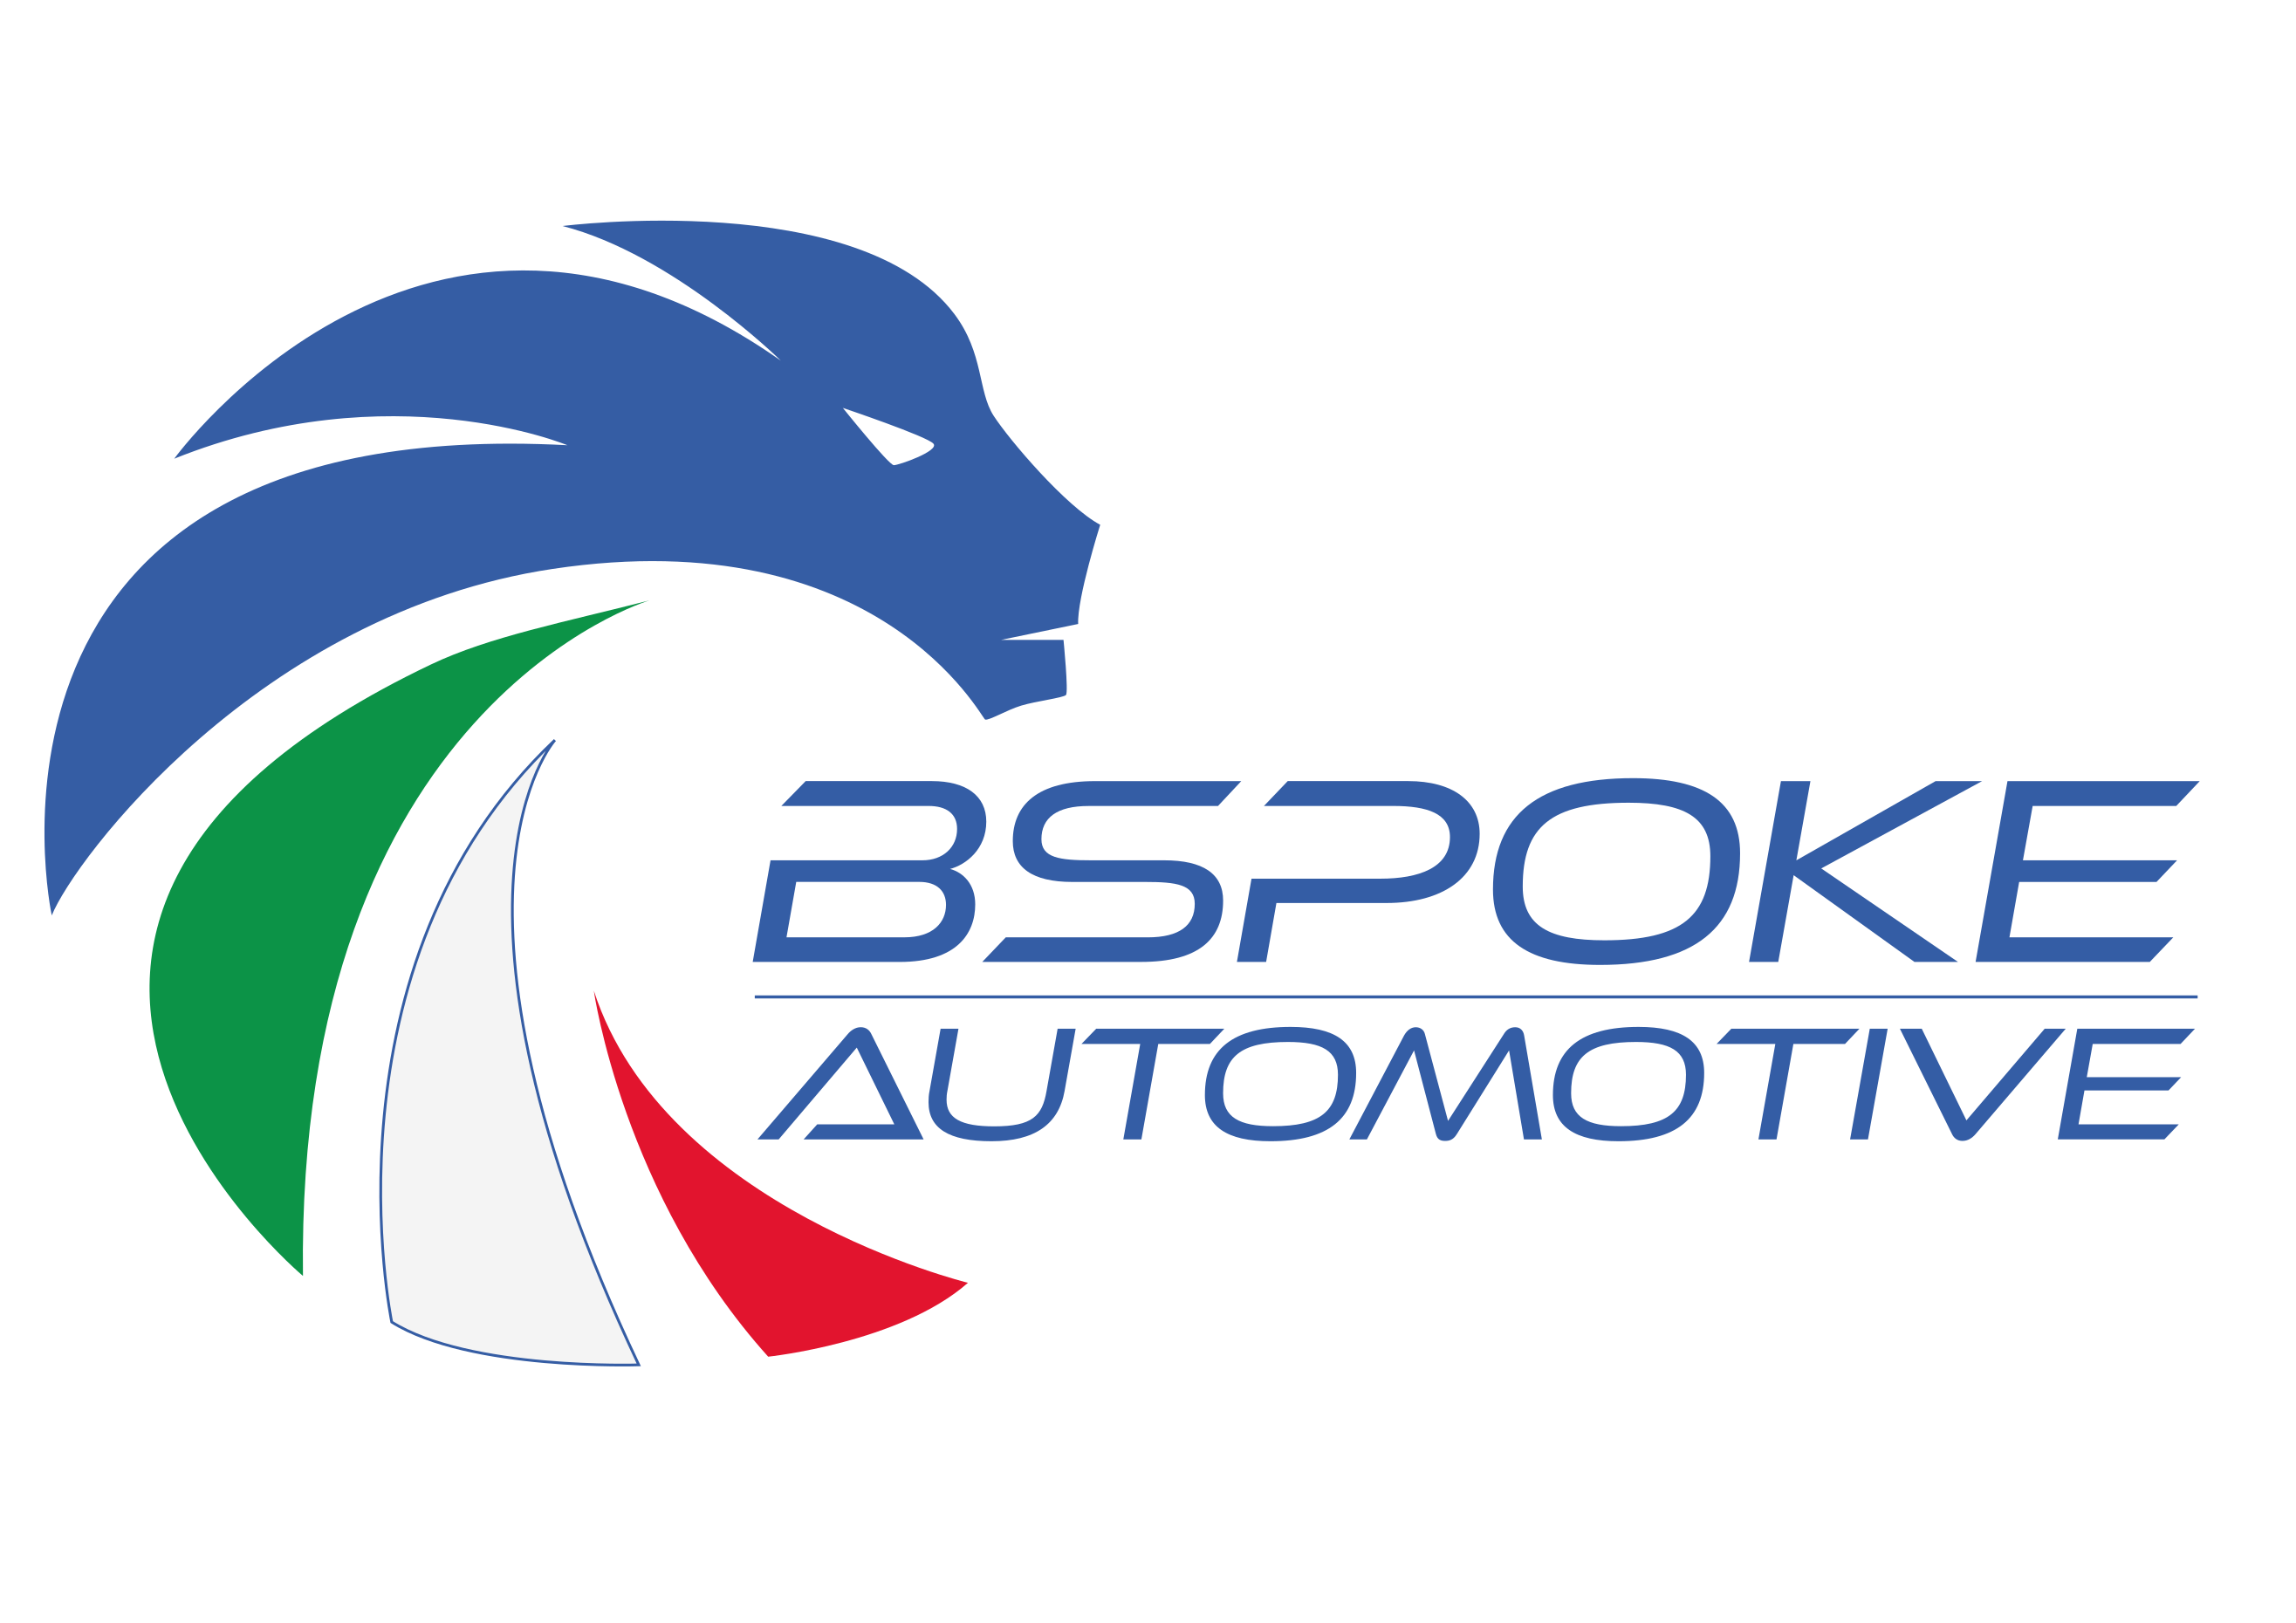 leone stilizzato con criniera colorata come la bandiera italiana e scritta BSPOKE Automotive al centro